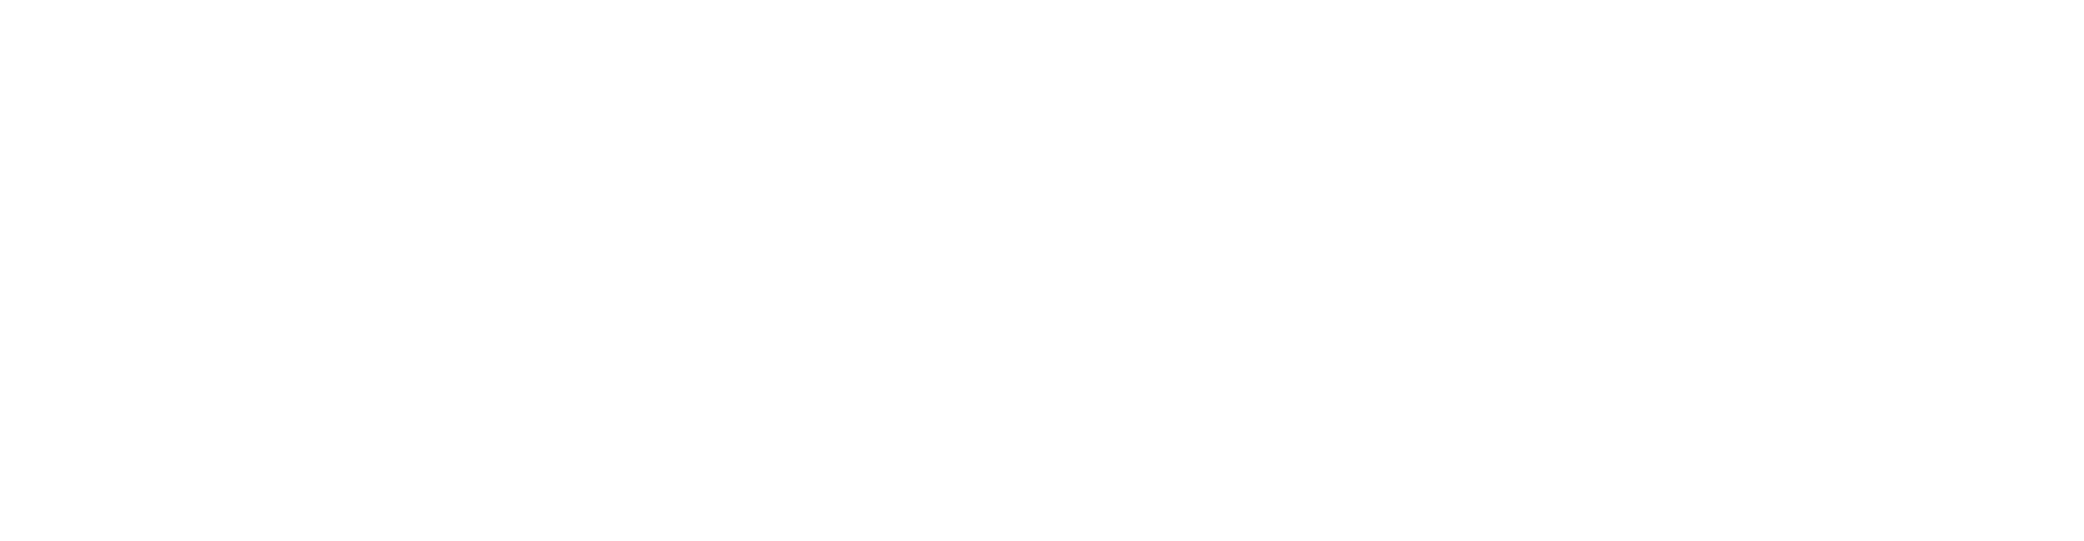 SISM-iSP Co-branding Logo_White